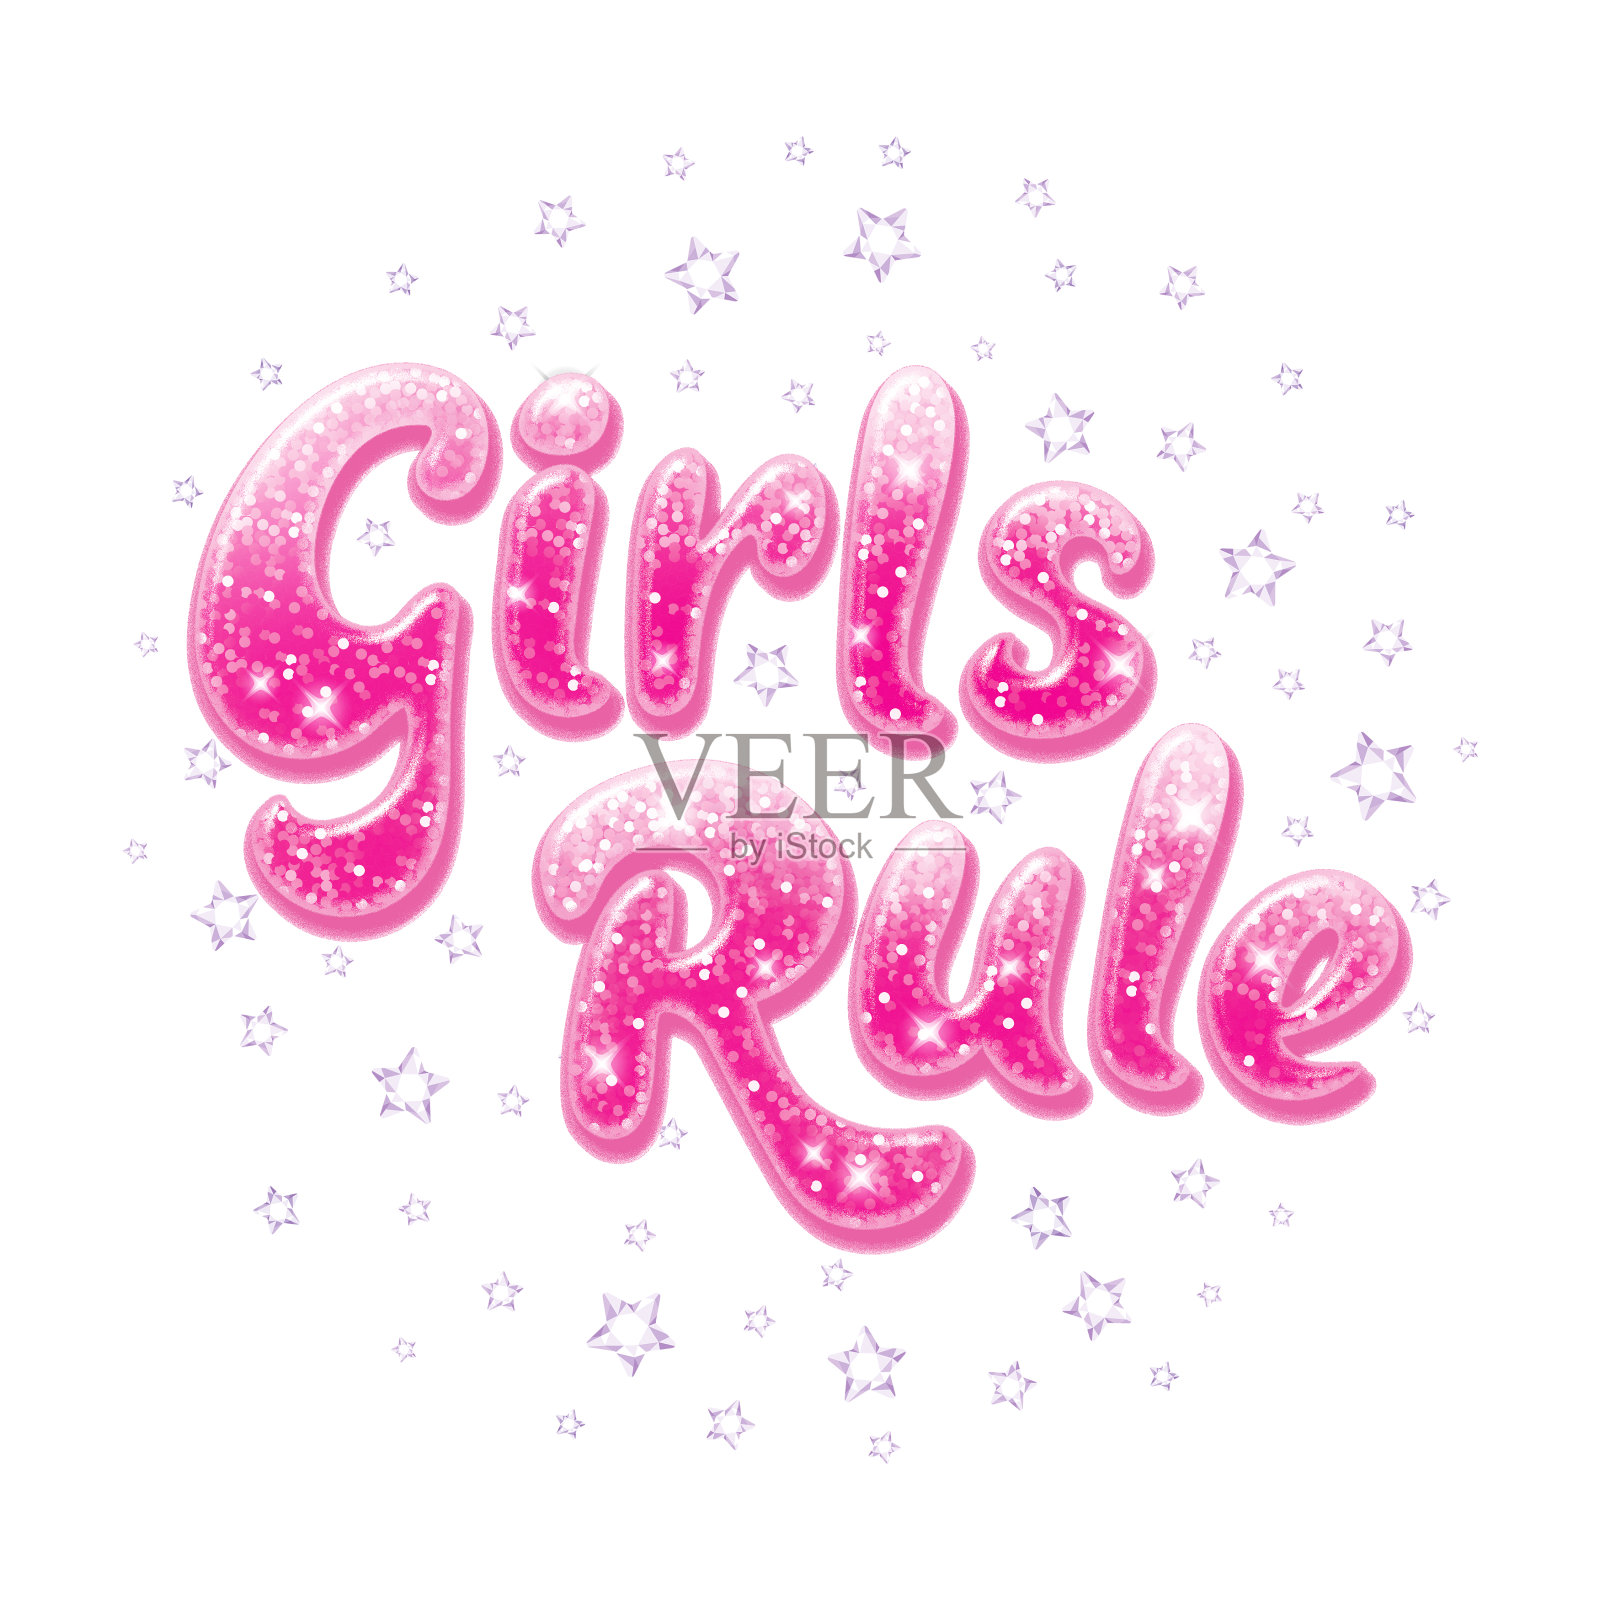 闪闪发光的短信女孩的规则。为孩子们画衣服、t恤、面料、包装或标志。粉红色的文字闪闪发光。插画图片素材